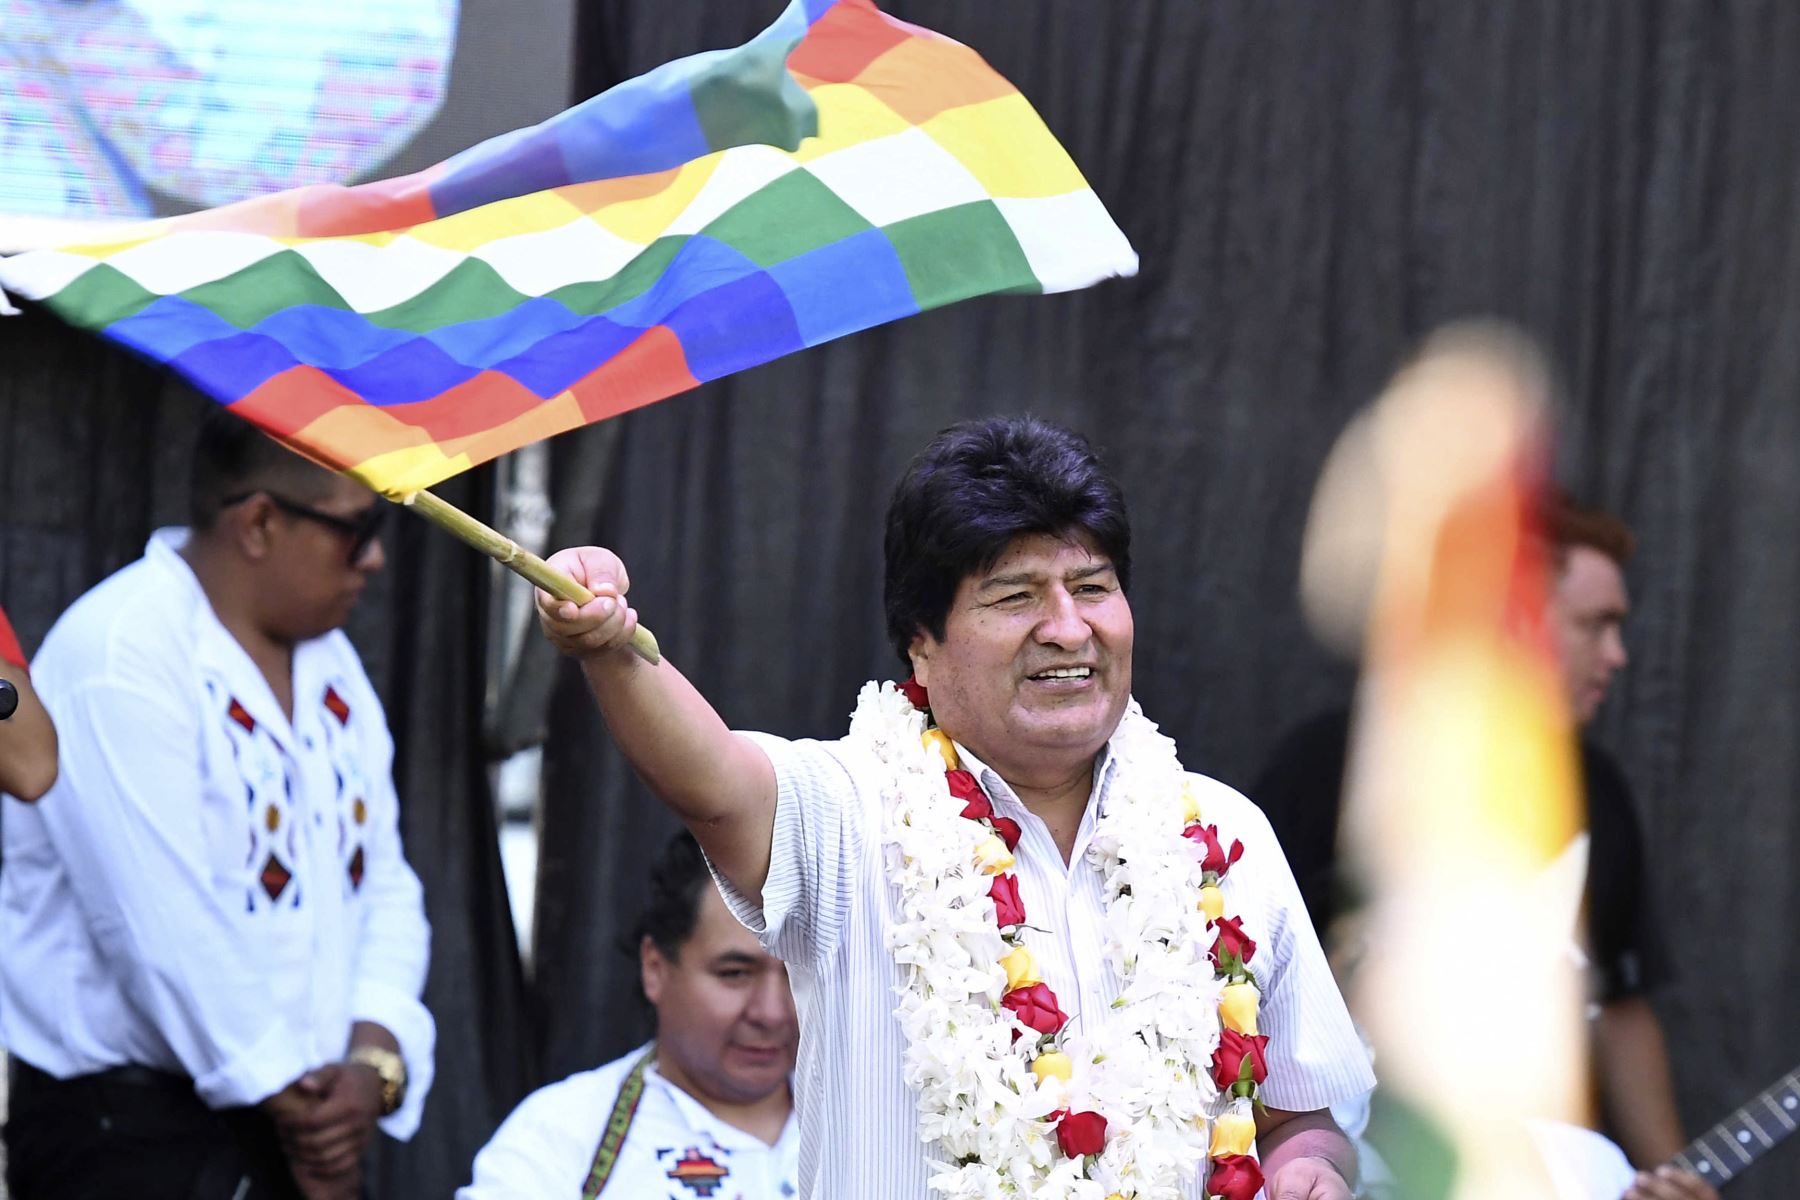 La acusación se basa en un video en el que se atribuye la voz de Morales para supuestamente incitar a bloqueos de ciudades en Bolivia. Foto: AFP